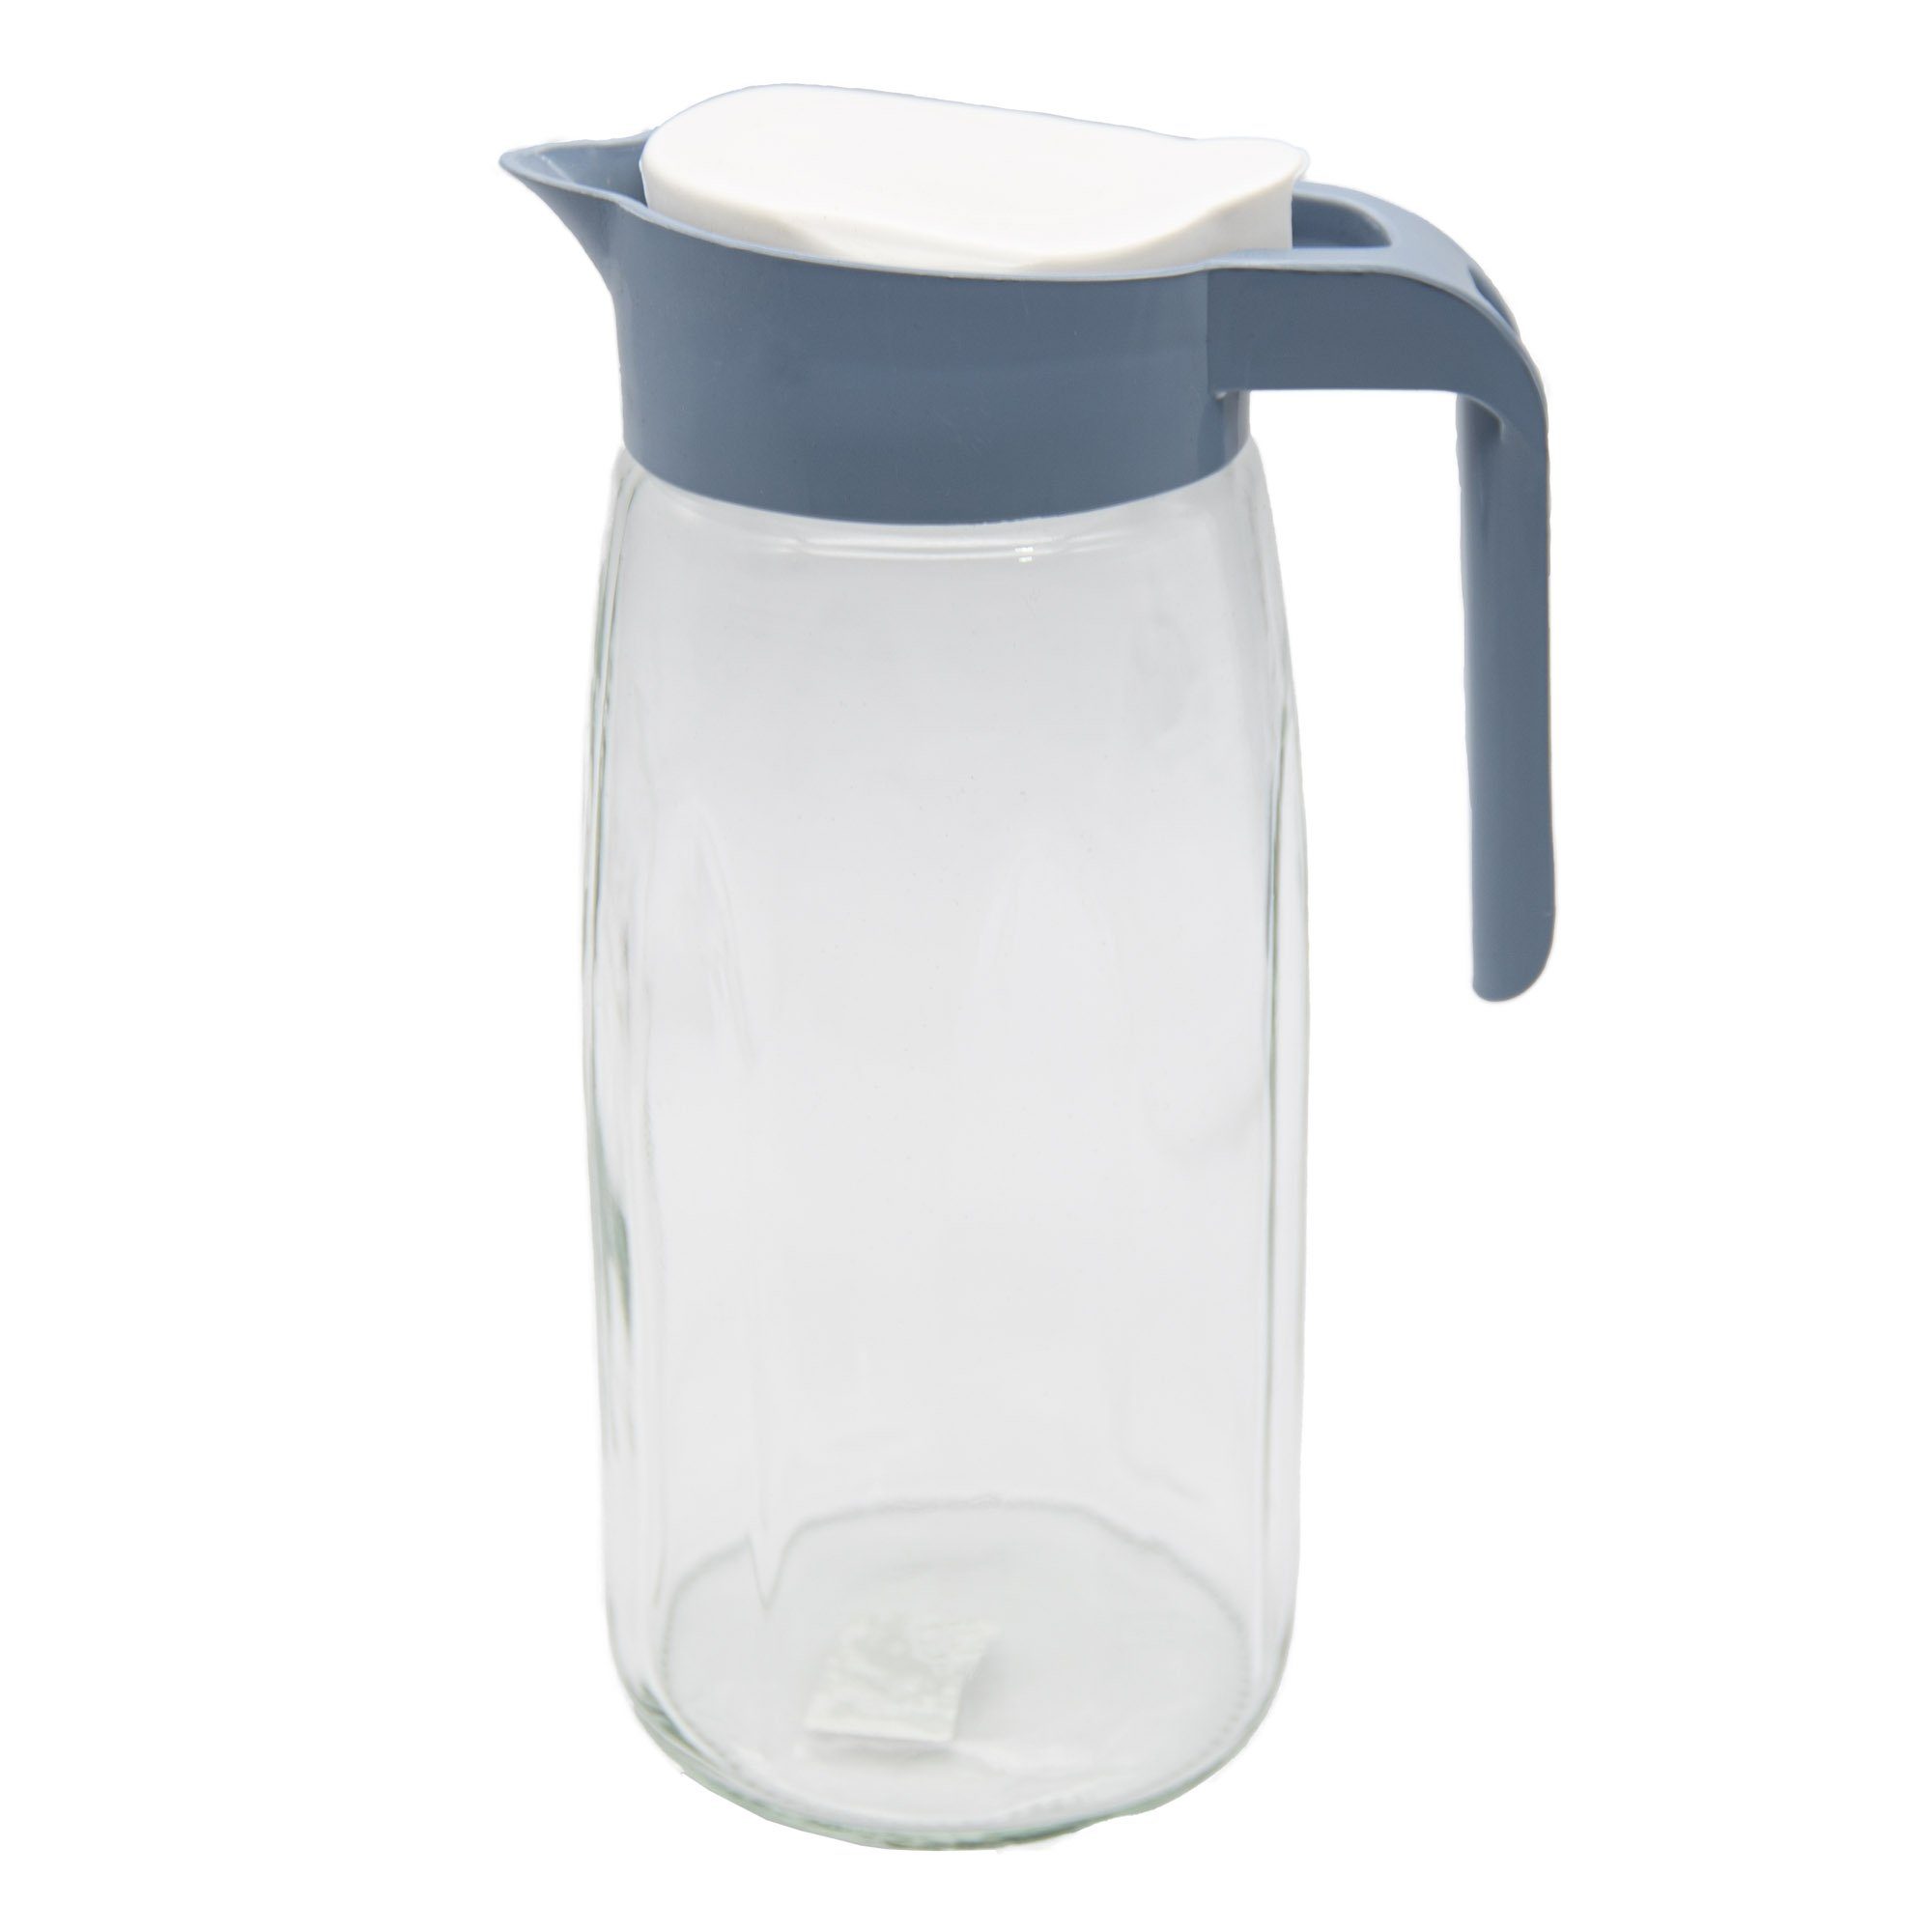 conkor Wasserkrug Glaskaraffe Glas Karaffe Krug 1,45L Wasserkaraffe, Deckel, Glaskrug, Kanne, Saftkrug Blau